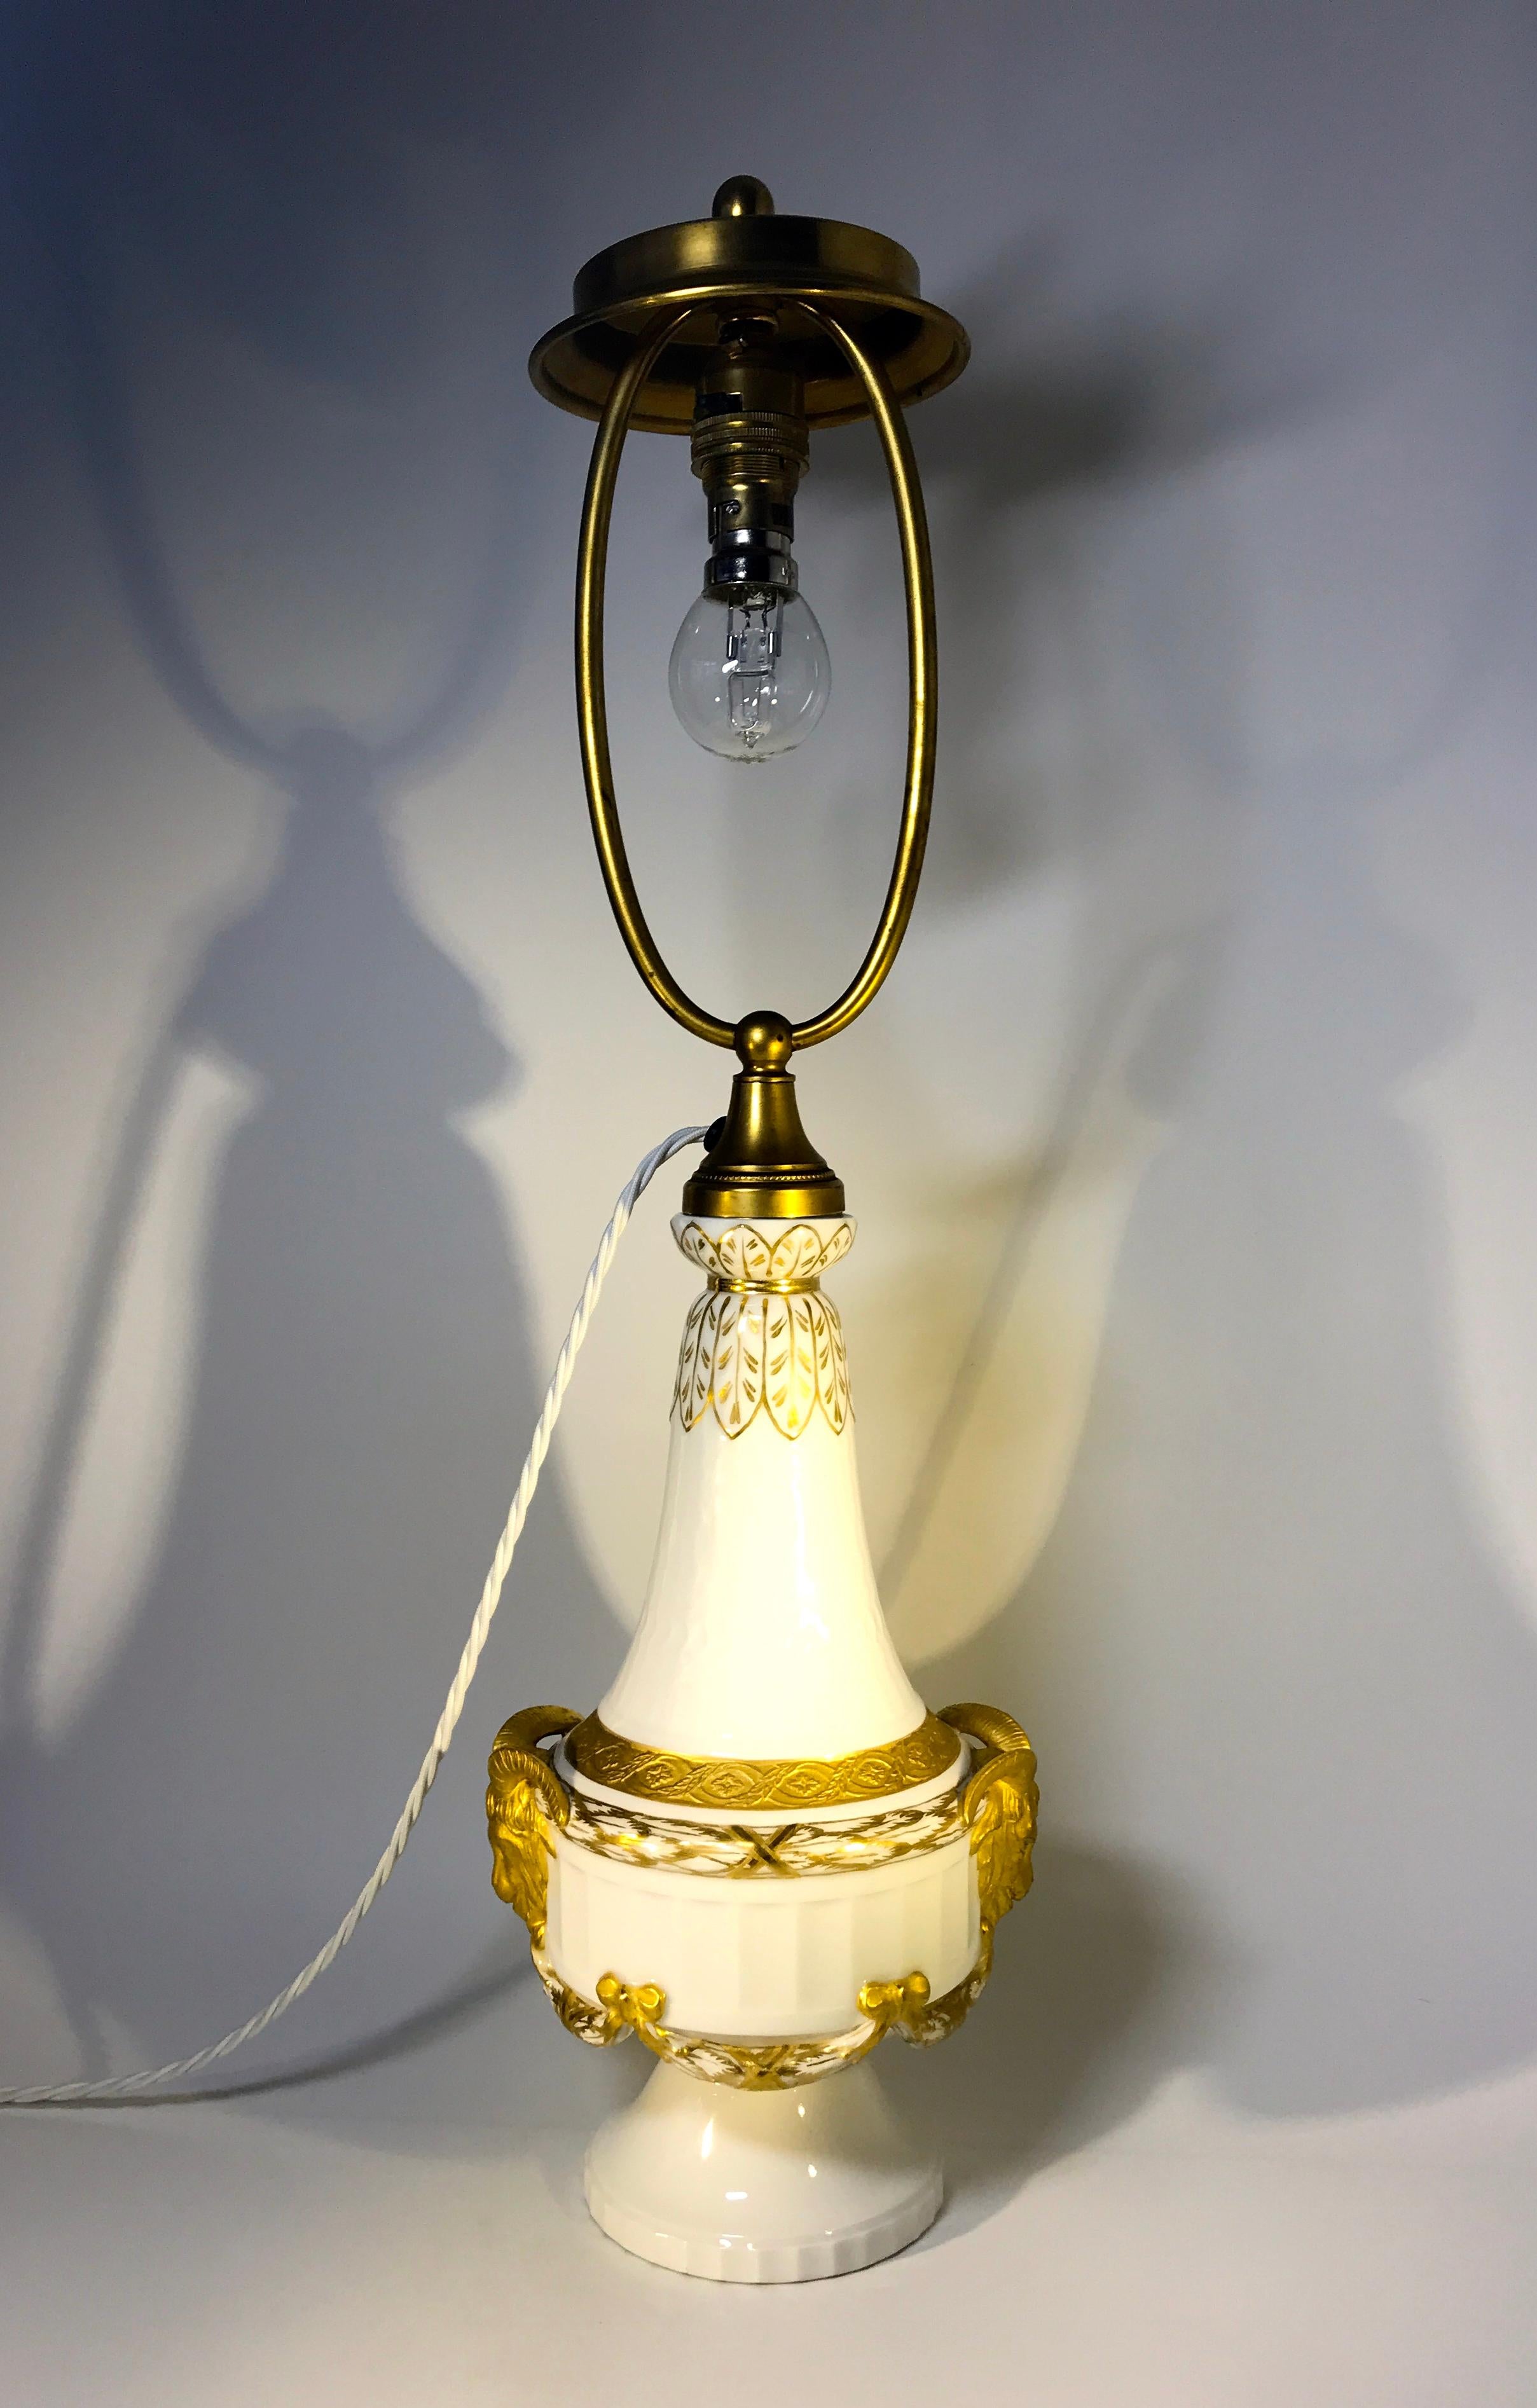 Fabelhafte Tischlampe aus weißem Porzellan im Stil XVI von Royal Copenhagen, datiert zwischen 1889-1922, in hervorragendem Zustand
Prächtig verziert mit vergoldeten Girlanden, Widderköpfen und Schleifen
Datiert 1889-1922
Signiert und nummeriert